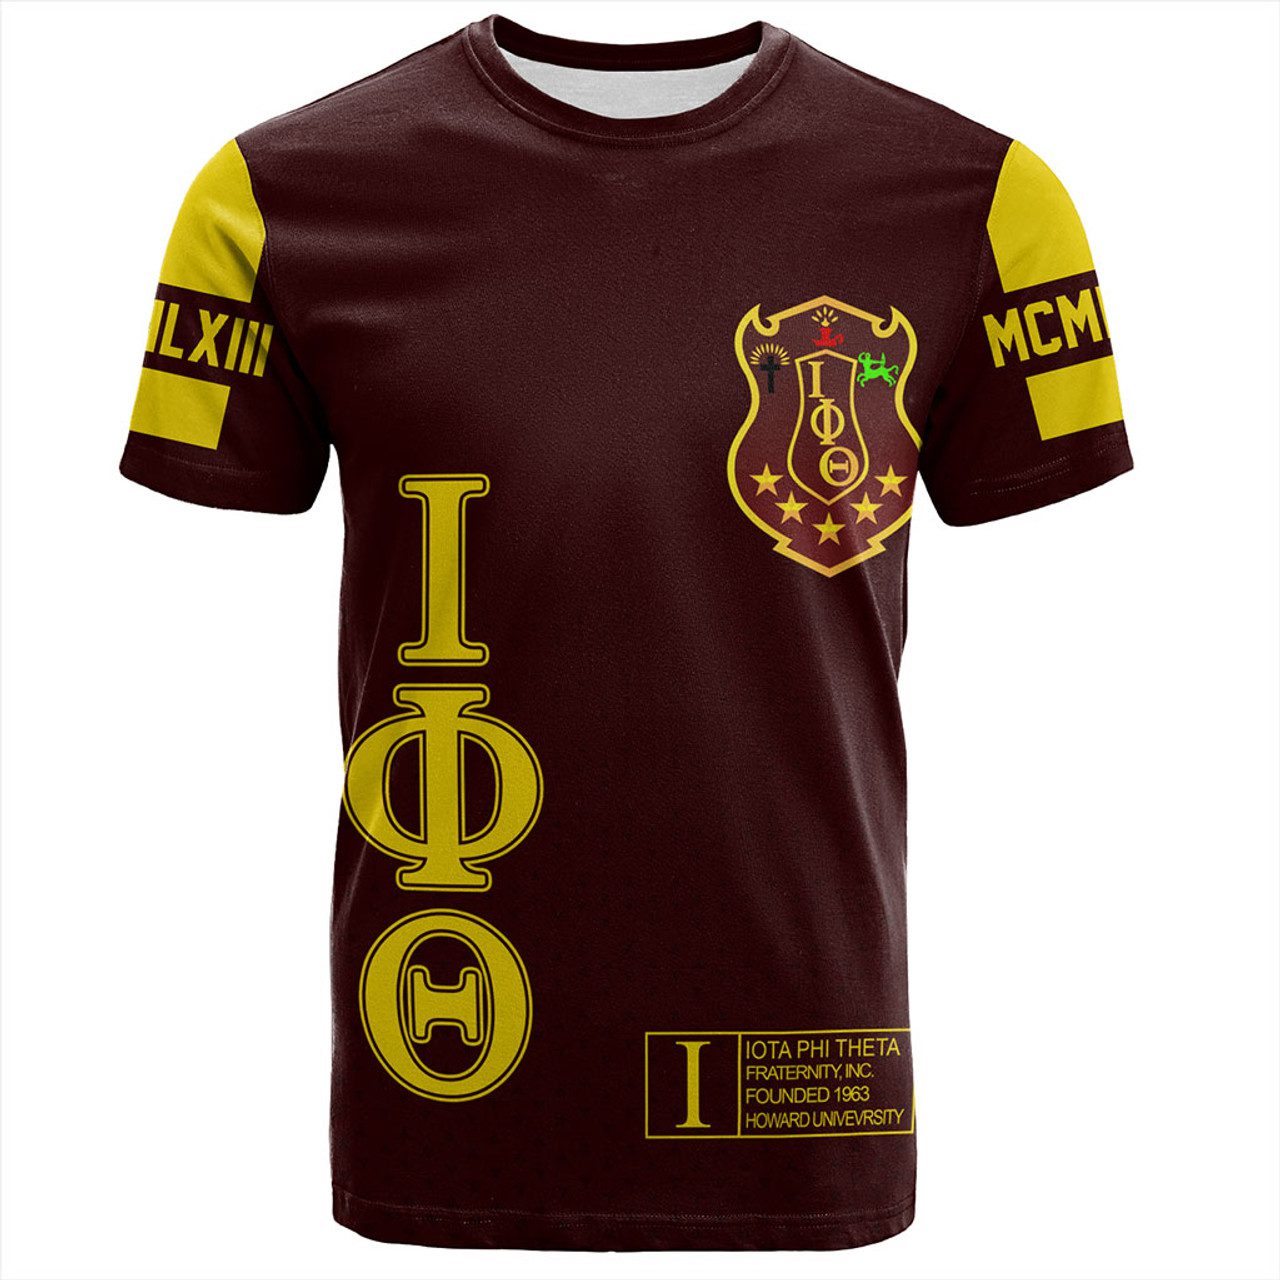 Iota Phi Theta T-Shirt MCM Style